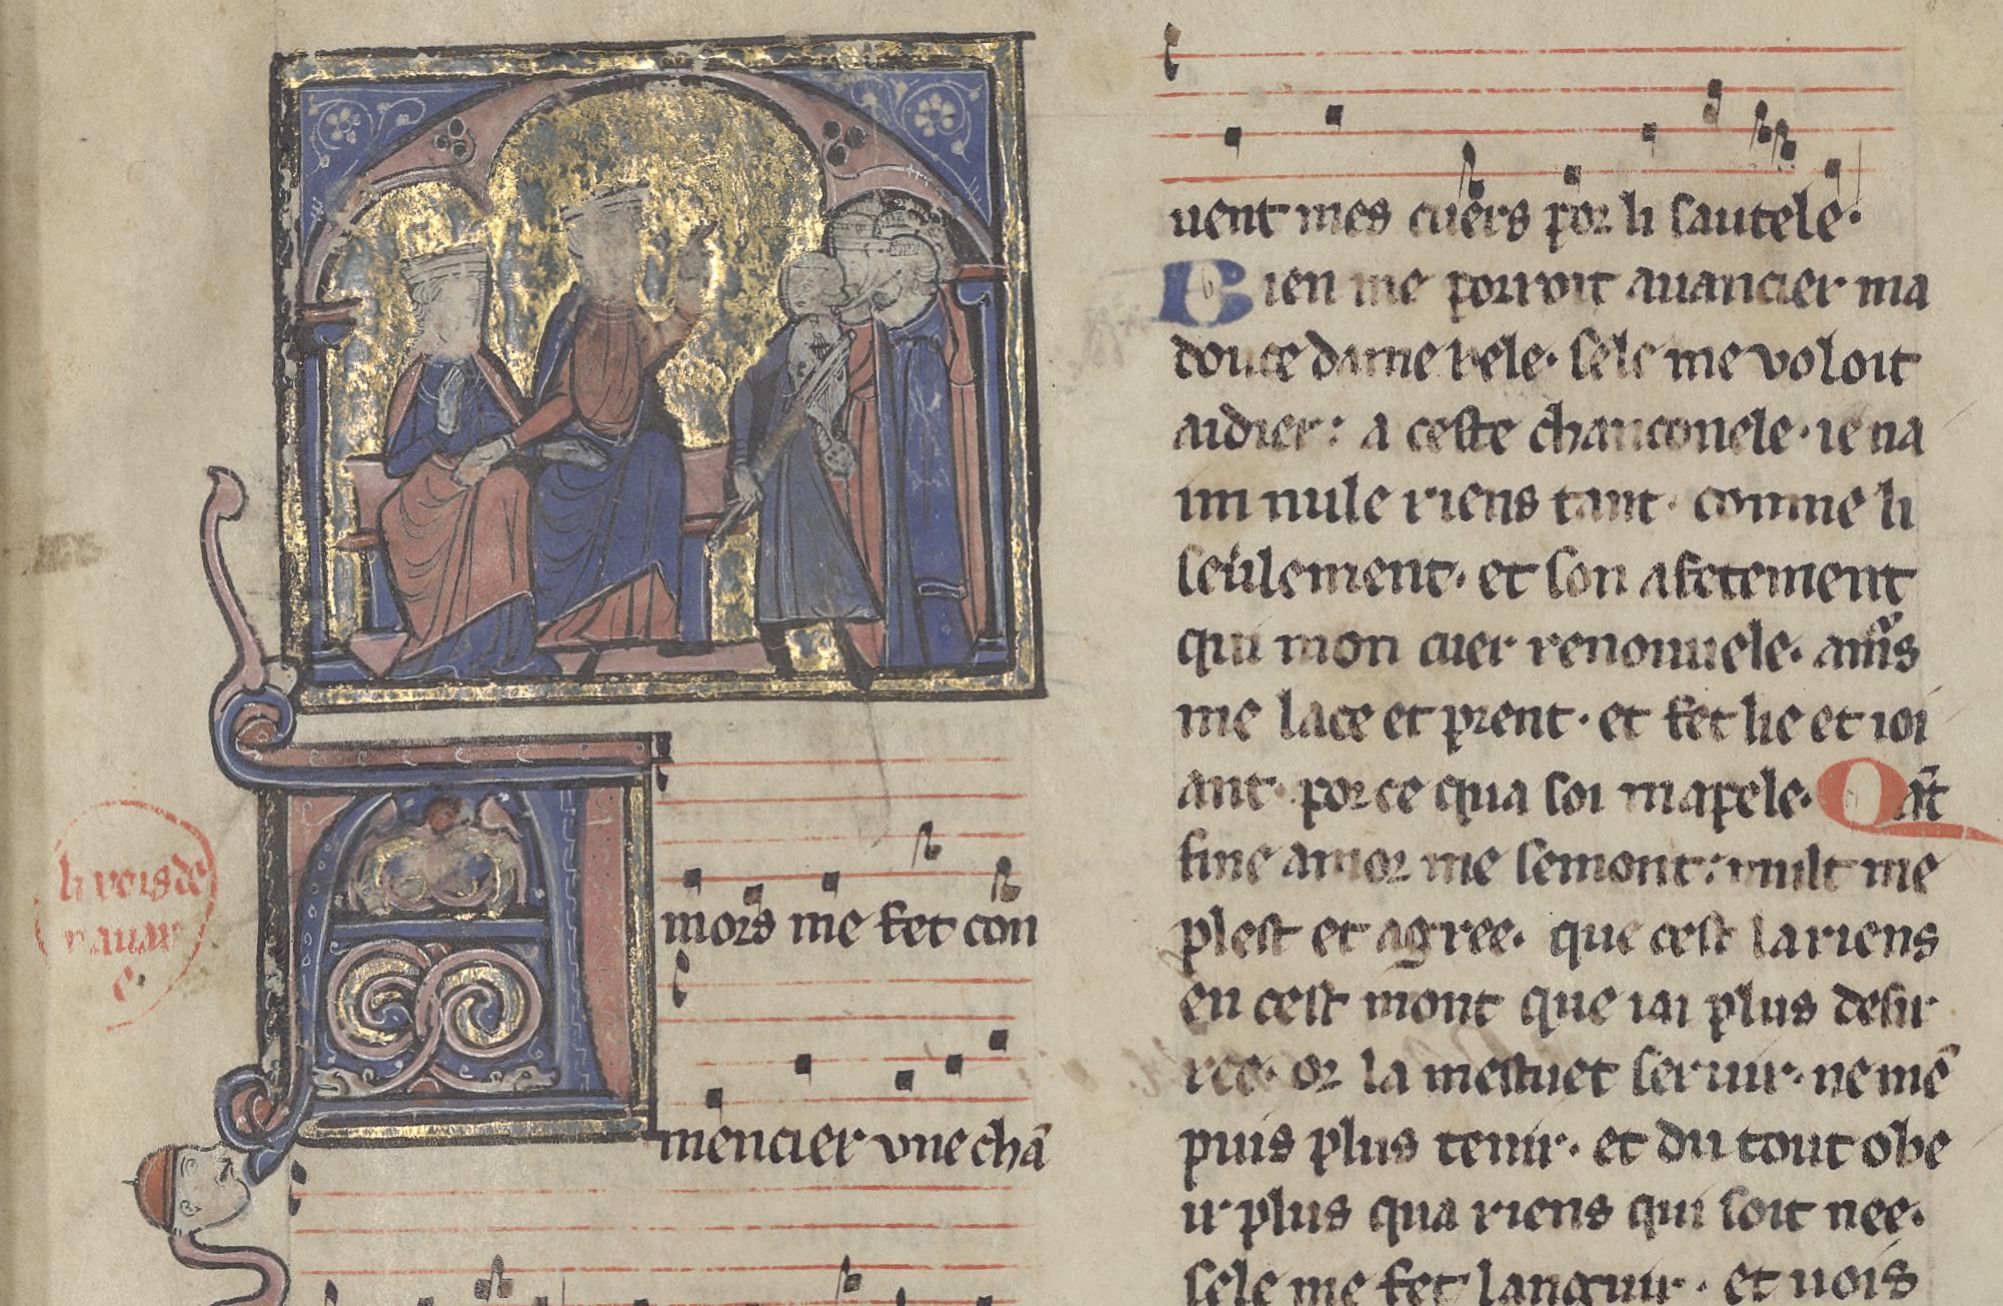 Recueil de chansons du XIIIe siècle, avec musique notée Thibaut IV, comte de Champagne, roi de Navarre. Auteur du texte